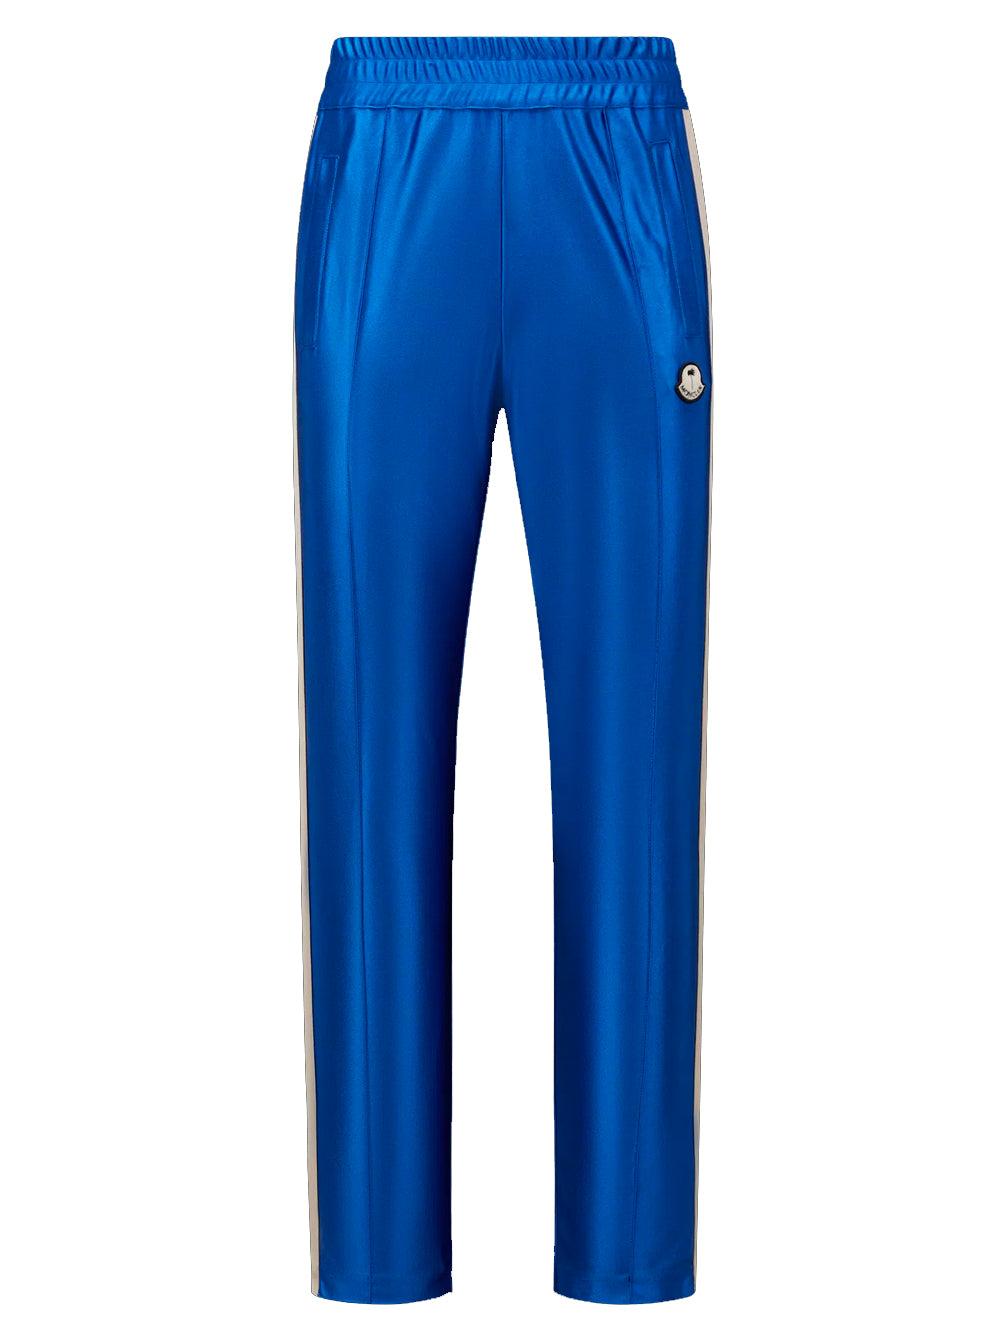 Moncler Genius X 8 Moncler Palm Angels Shiny Track Pants Blue for Men | Lyst